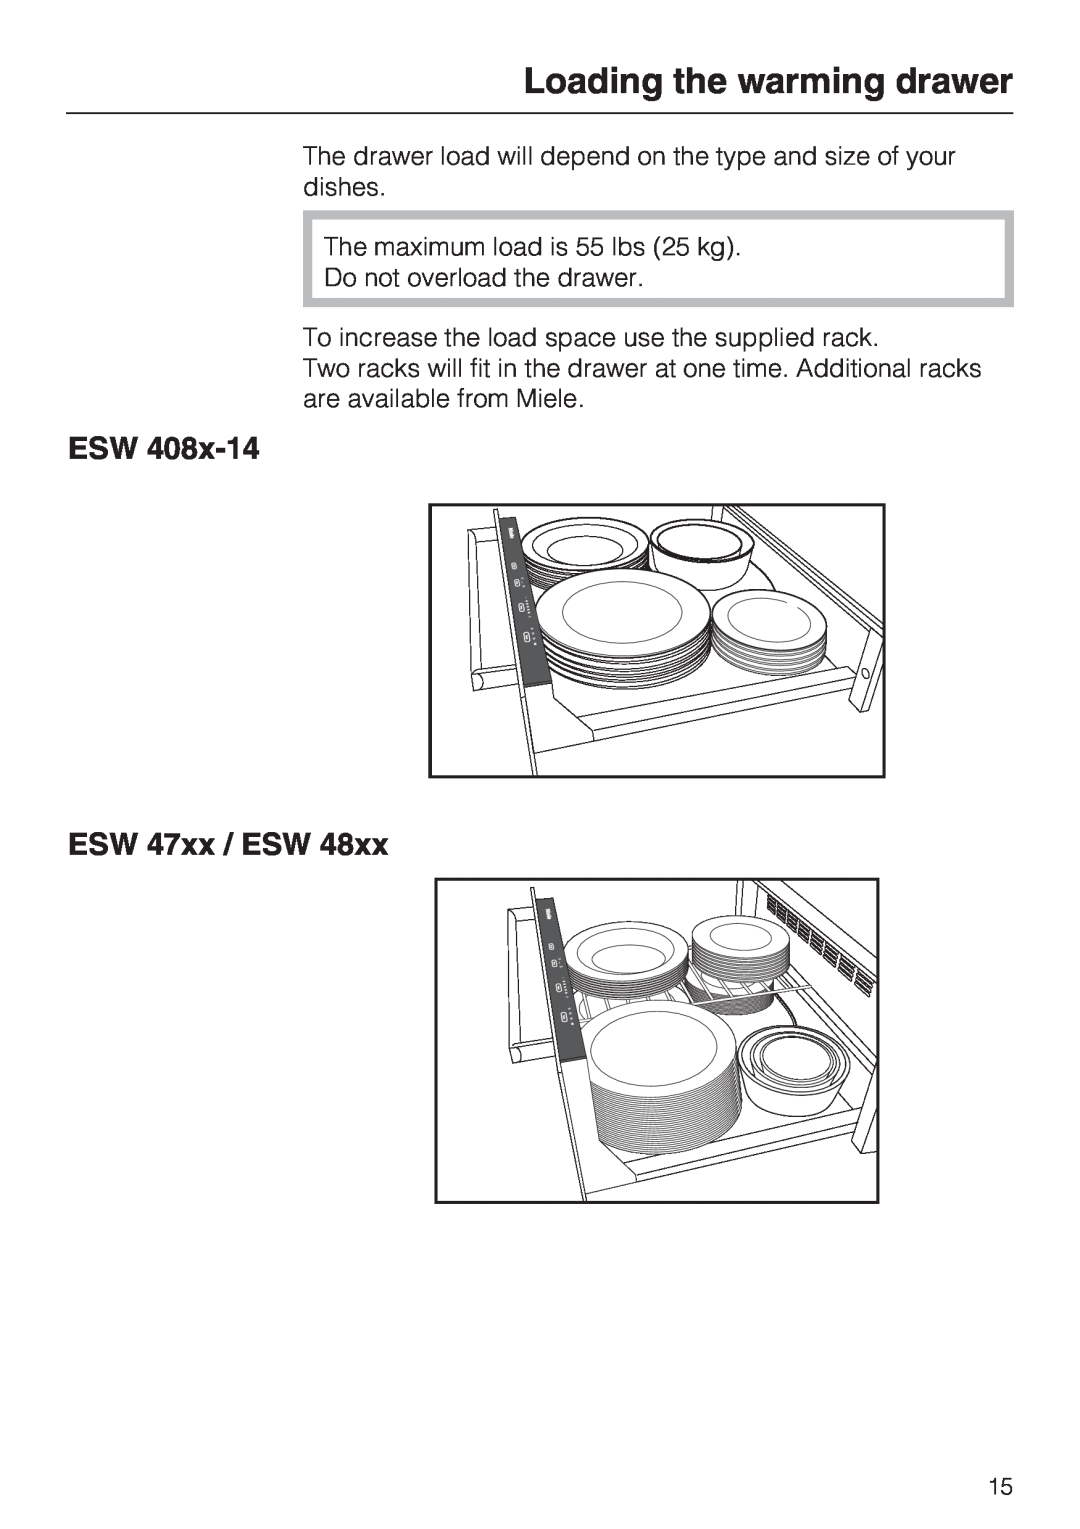 Miele ESW 408X-14, ESW48XX installation instructions Loading the warming drawer, ESW ESW 47xx / ESW 